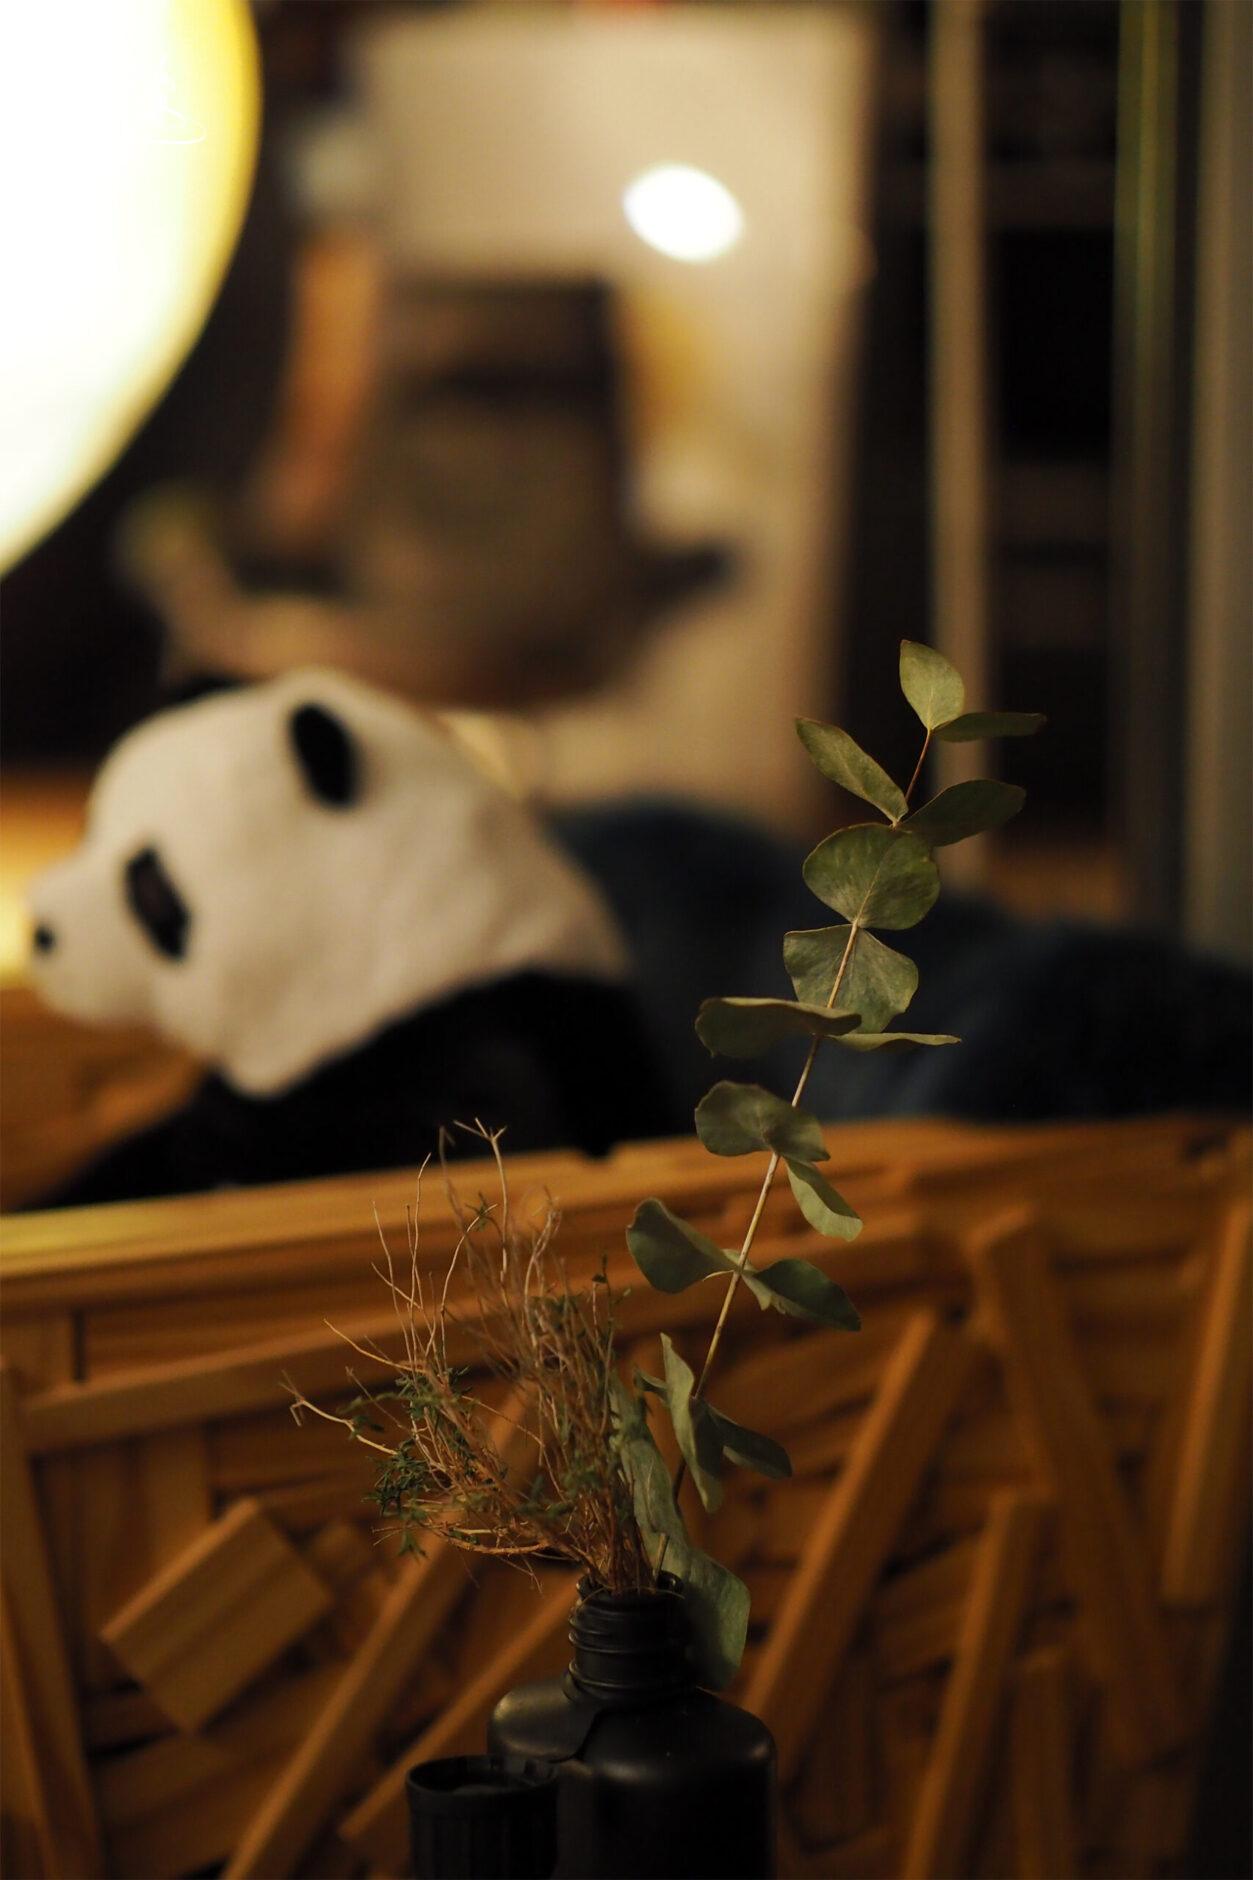 Strauch im Vordergrund. Im Hintergrund sitzt ein Pandaplüschbär am Tisch.